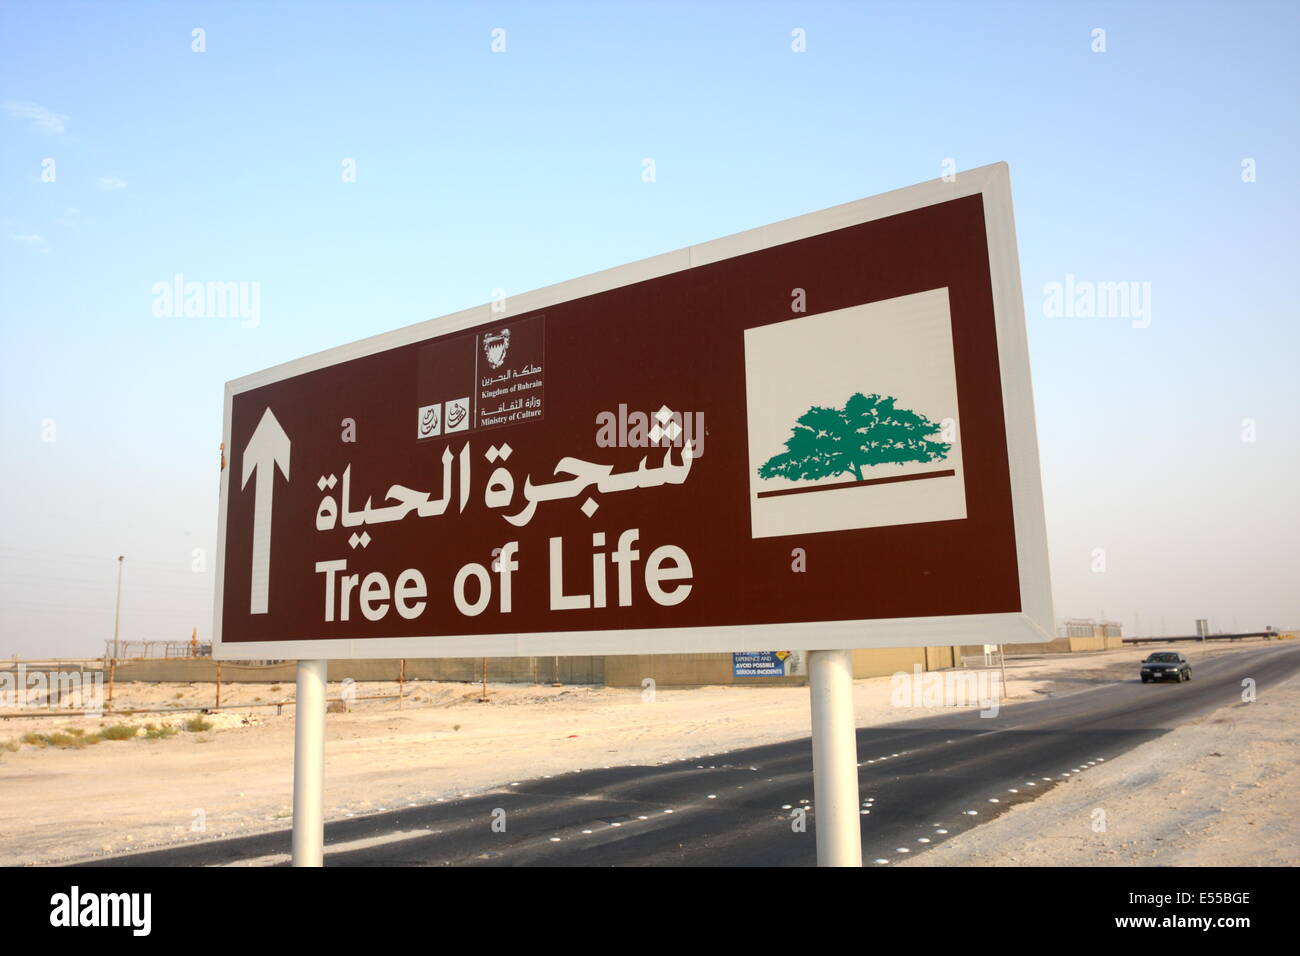 Une signalisation routière en arabe et en anglais montrant le chemin de l'arbre de vie, dans le Royaume de Bahreïn Banque D'Images